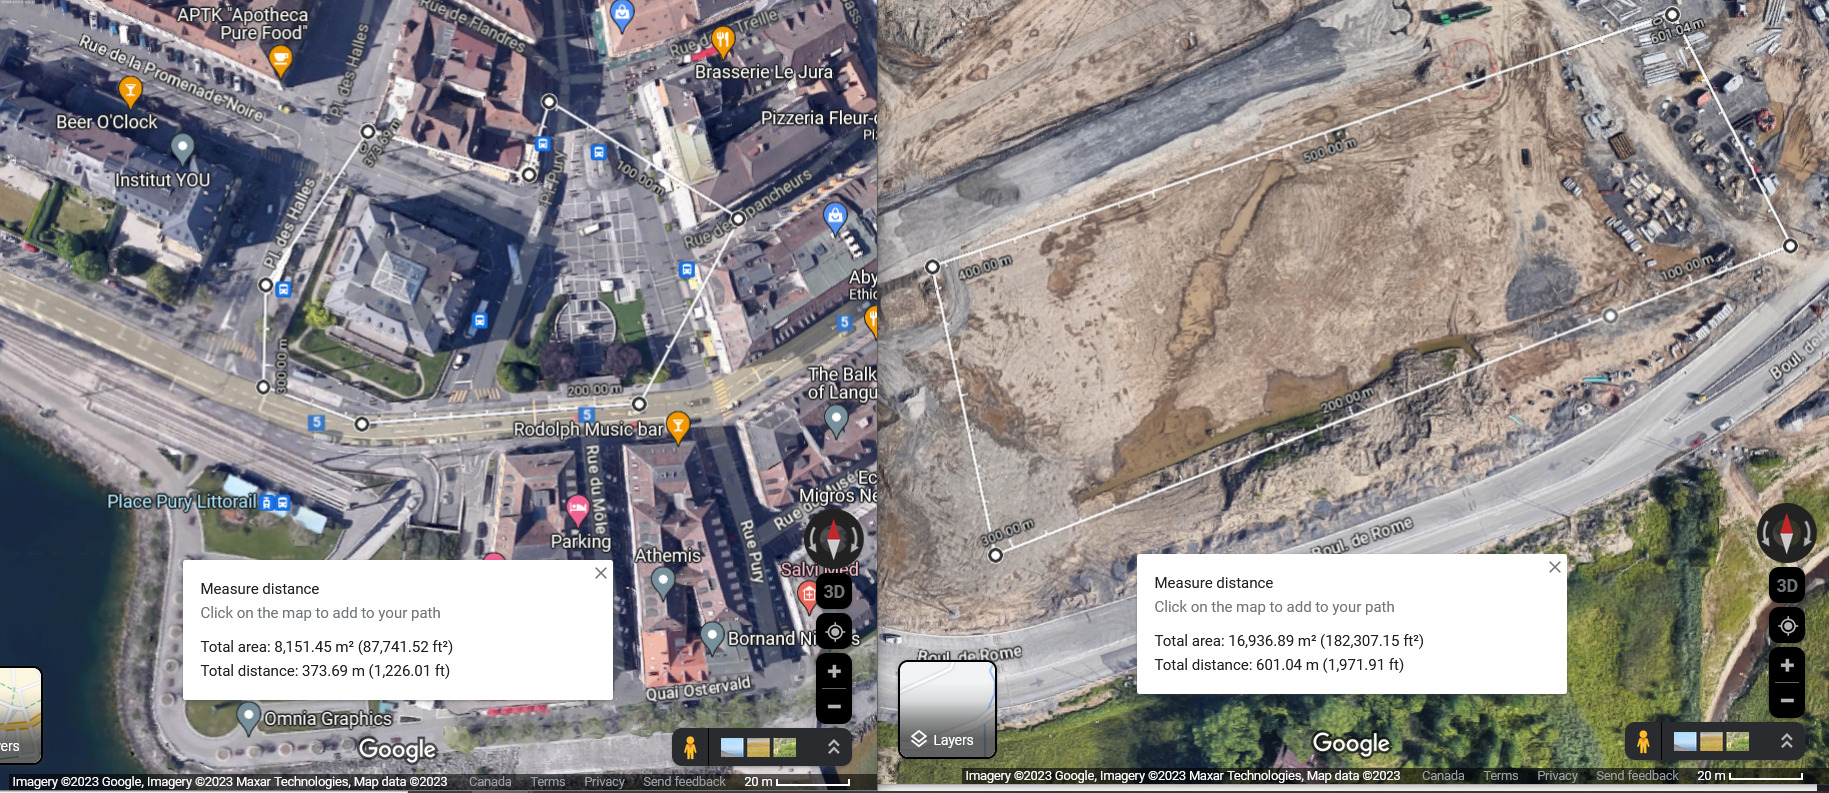 screenshot comparant deux terminus sur g maps à la même échelle. L'un est un carré en chantier, l'autre est intégré au mileu d'une place piétonne du centre ville.